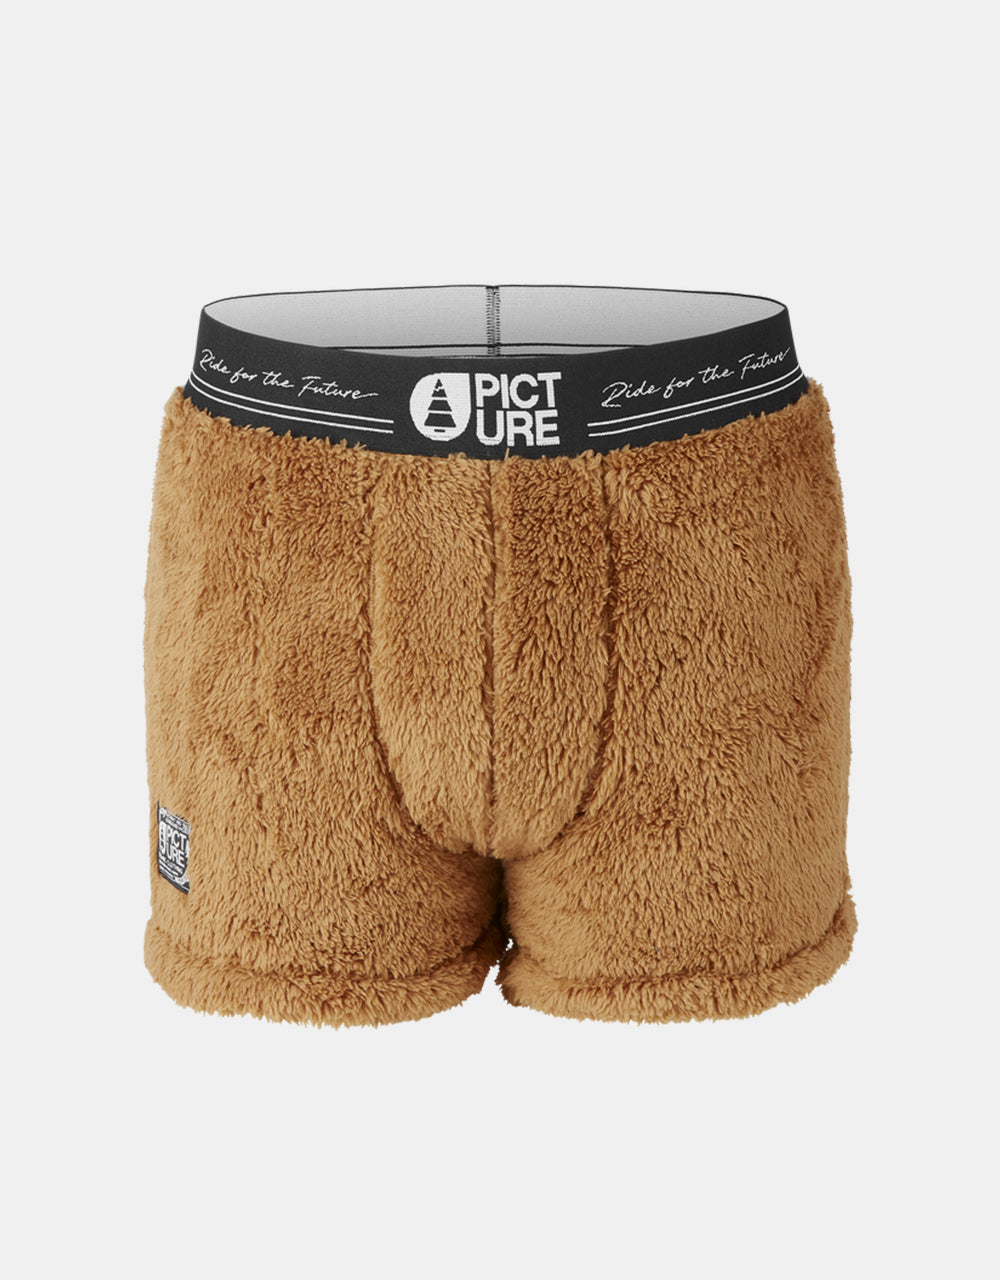 Picture Fleece Boxer Shorts - Poilstrusse – Route One